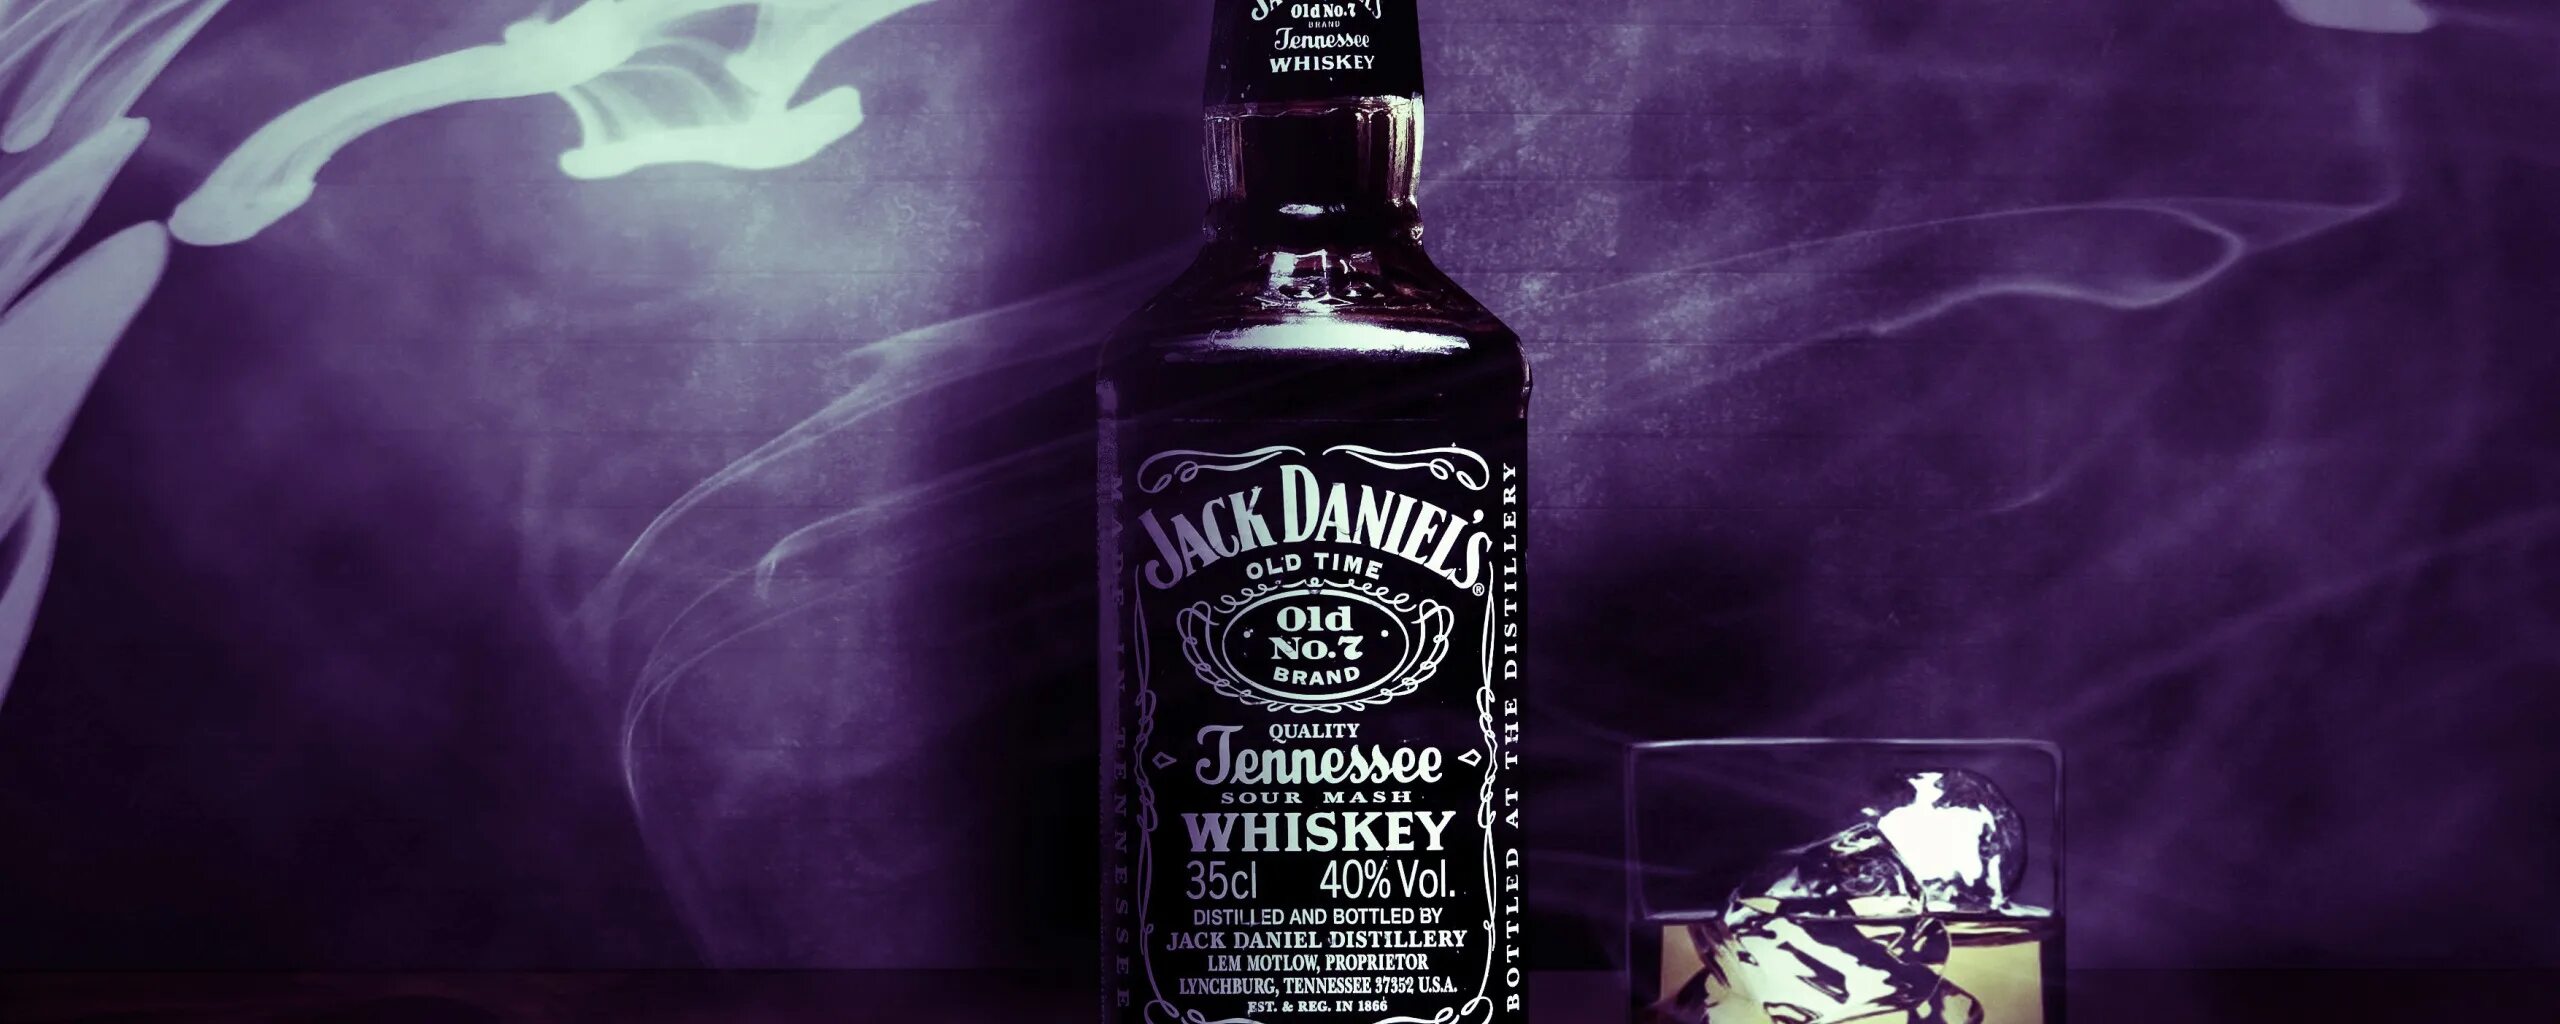 Я пила виски чистыми песня. Джек Дэниэлс. Обложка виски. Обложки для ВК С виски. Джек Дэниэлс фиолетовый.